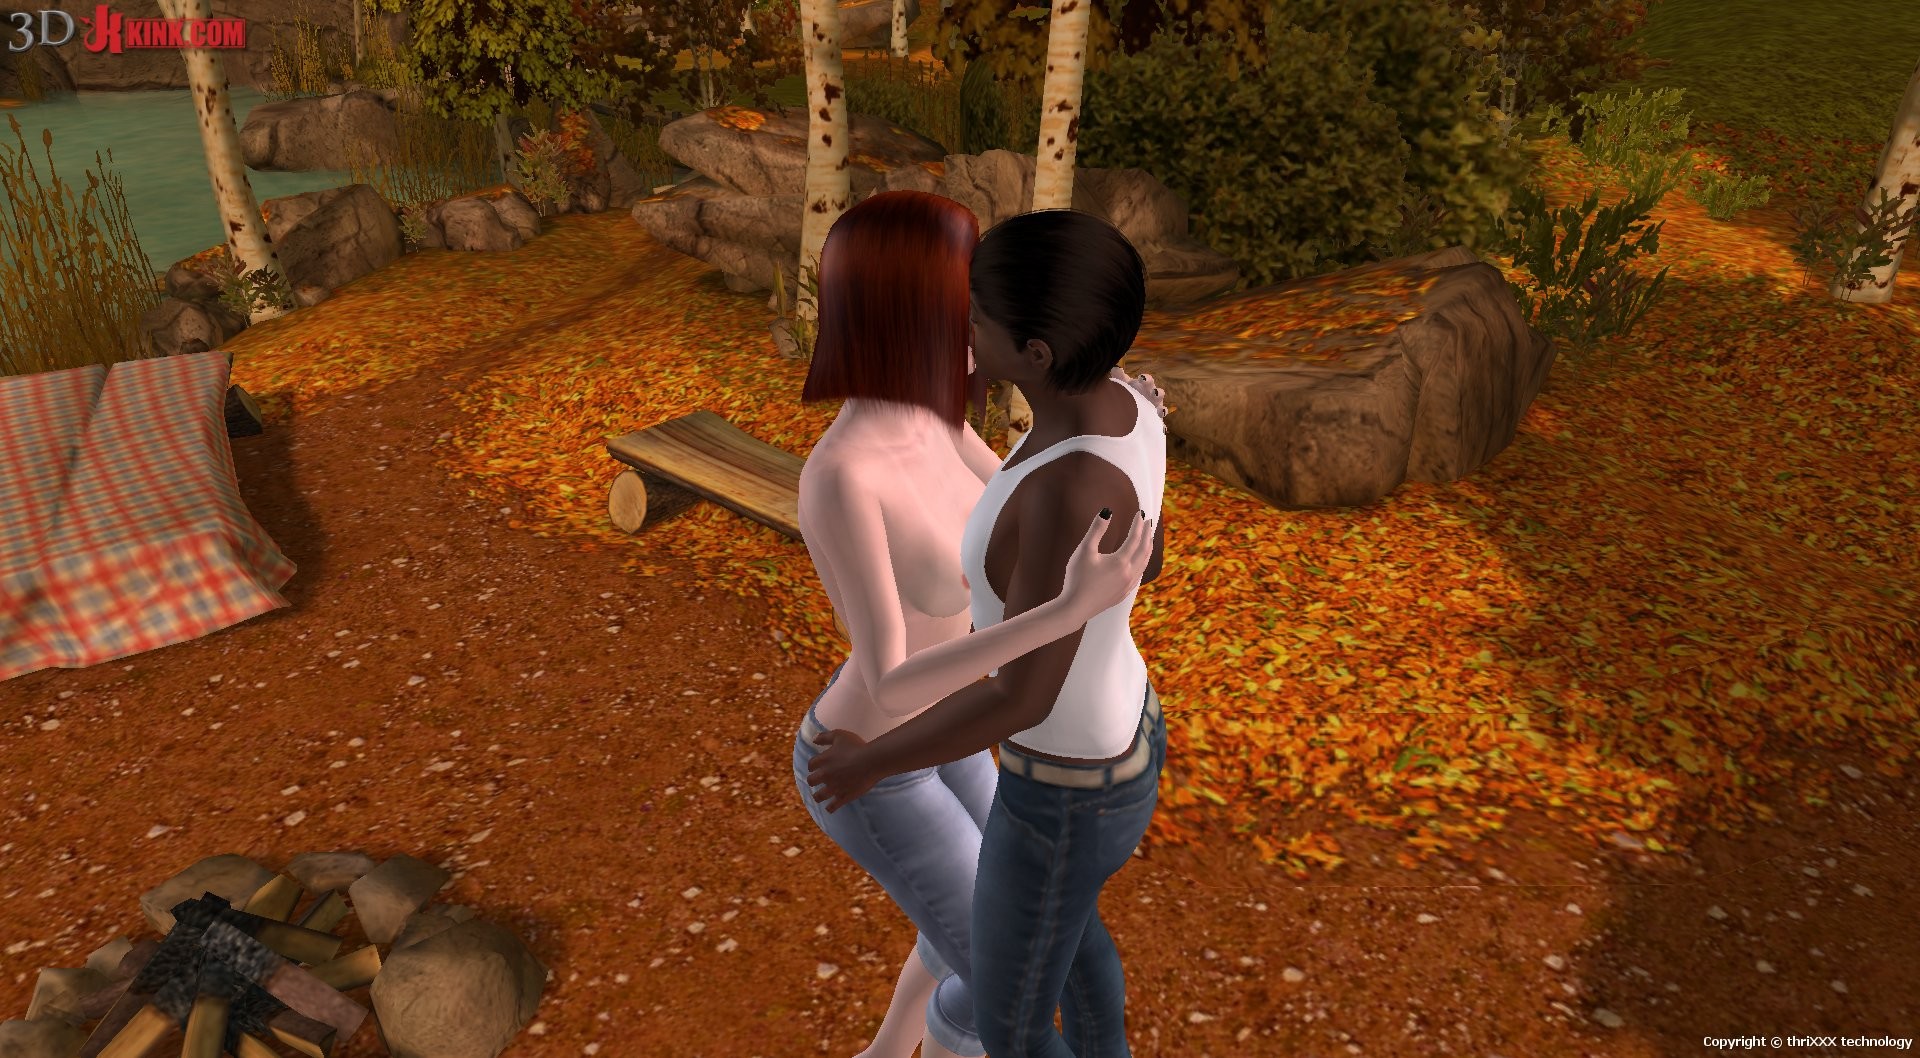 Action sexuelle interraciale créée dans un jeu sexuel virtuel fétichiste en 3D !
 #69360076